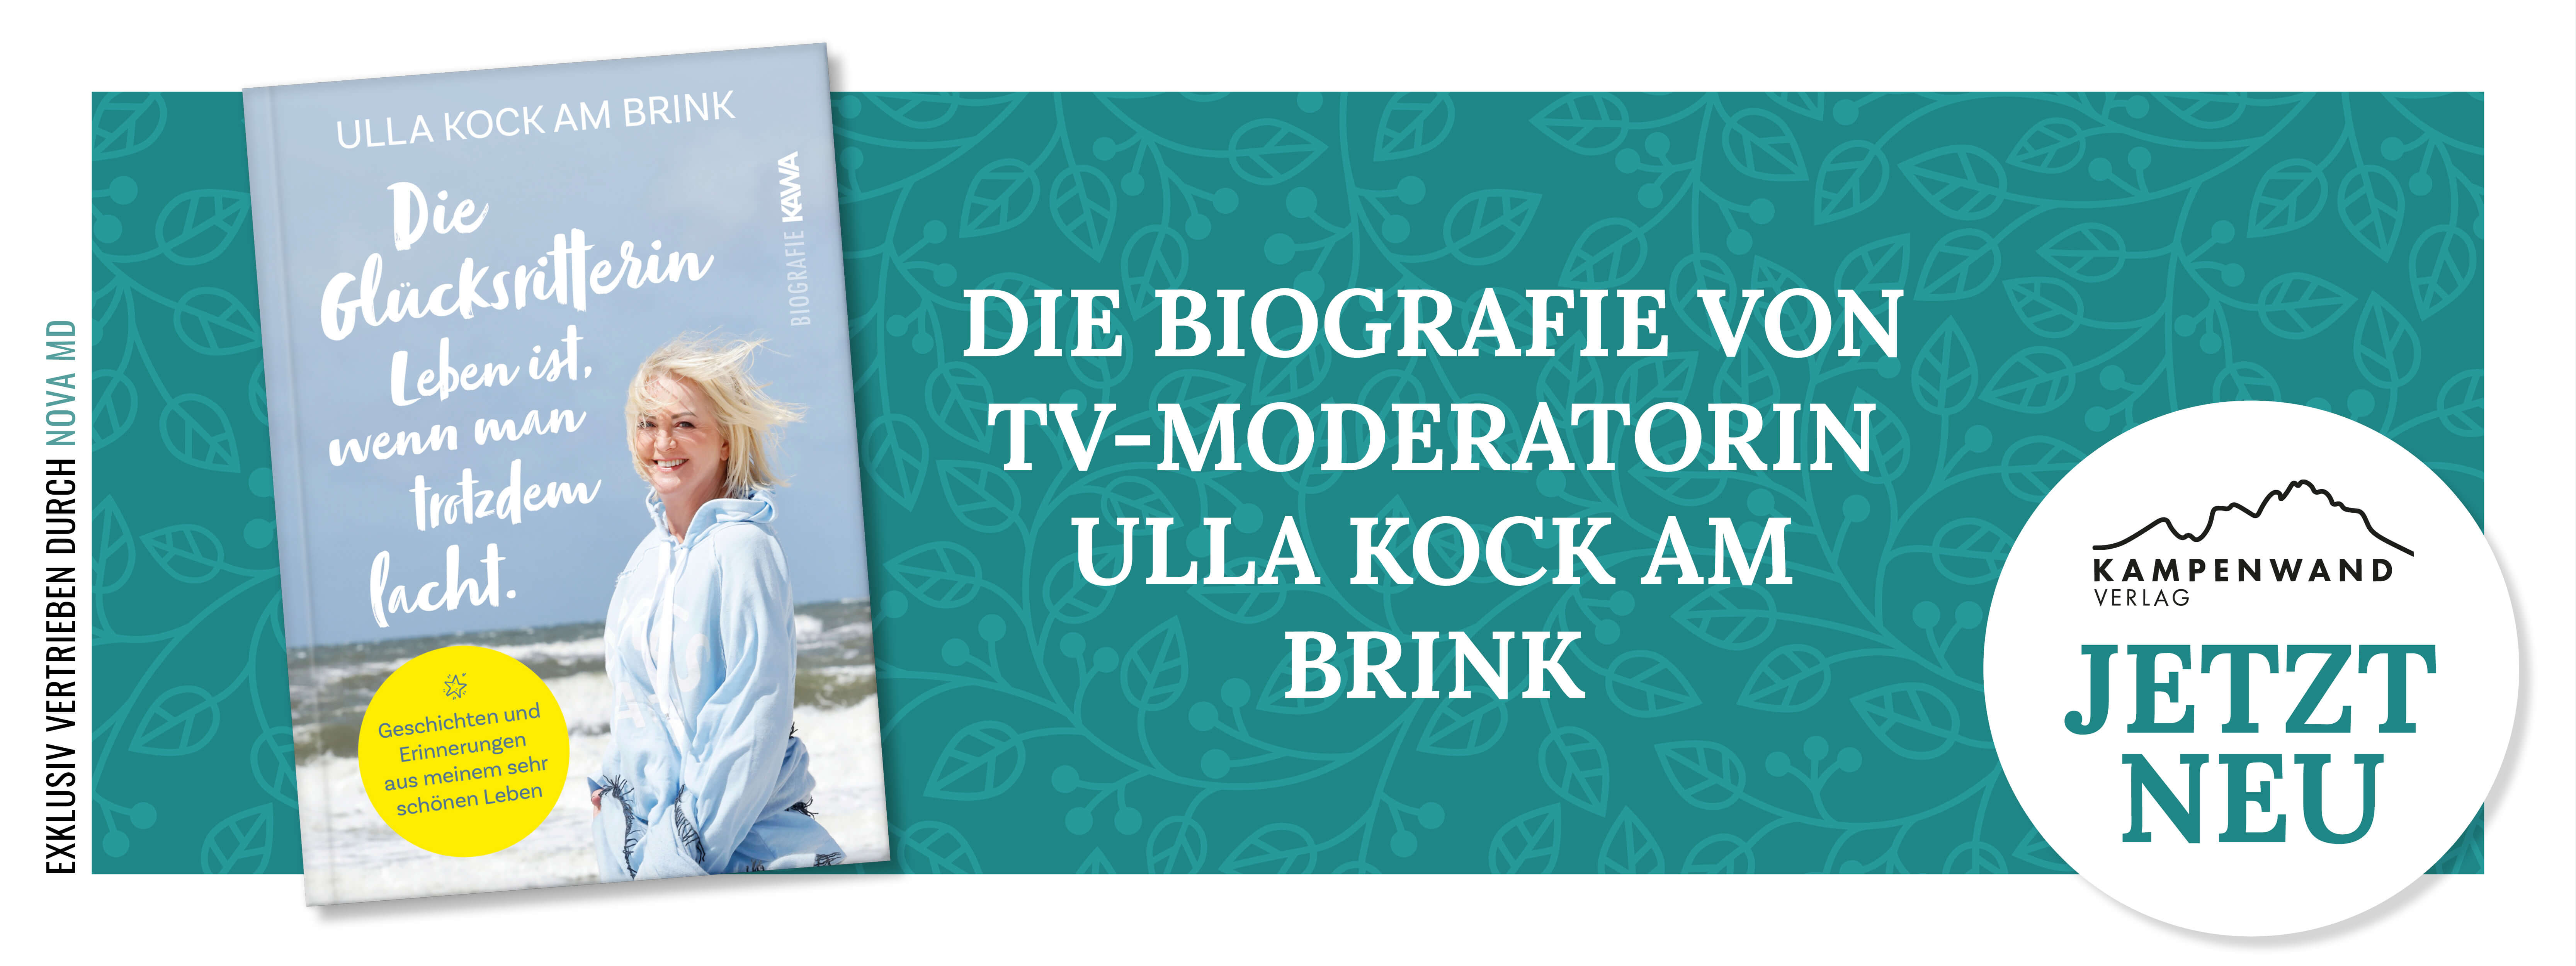 Die Biografie von Ulla Kock am Brink erschienen im Kampenwand Verlag